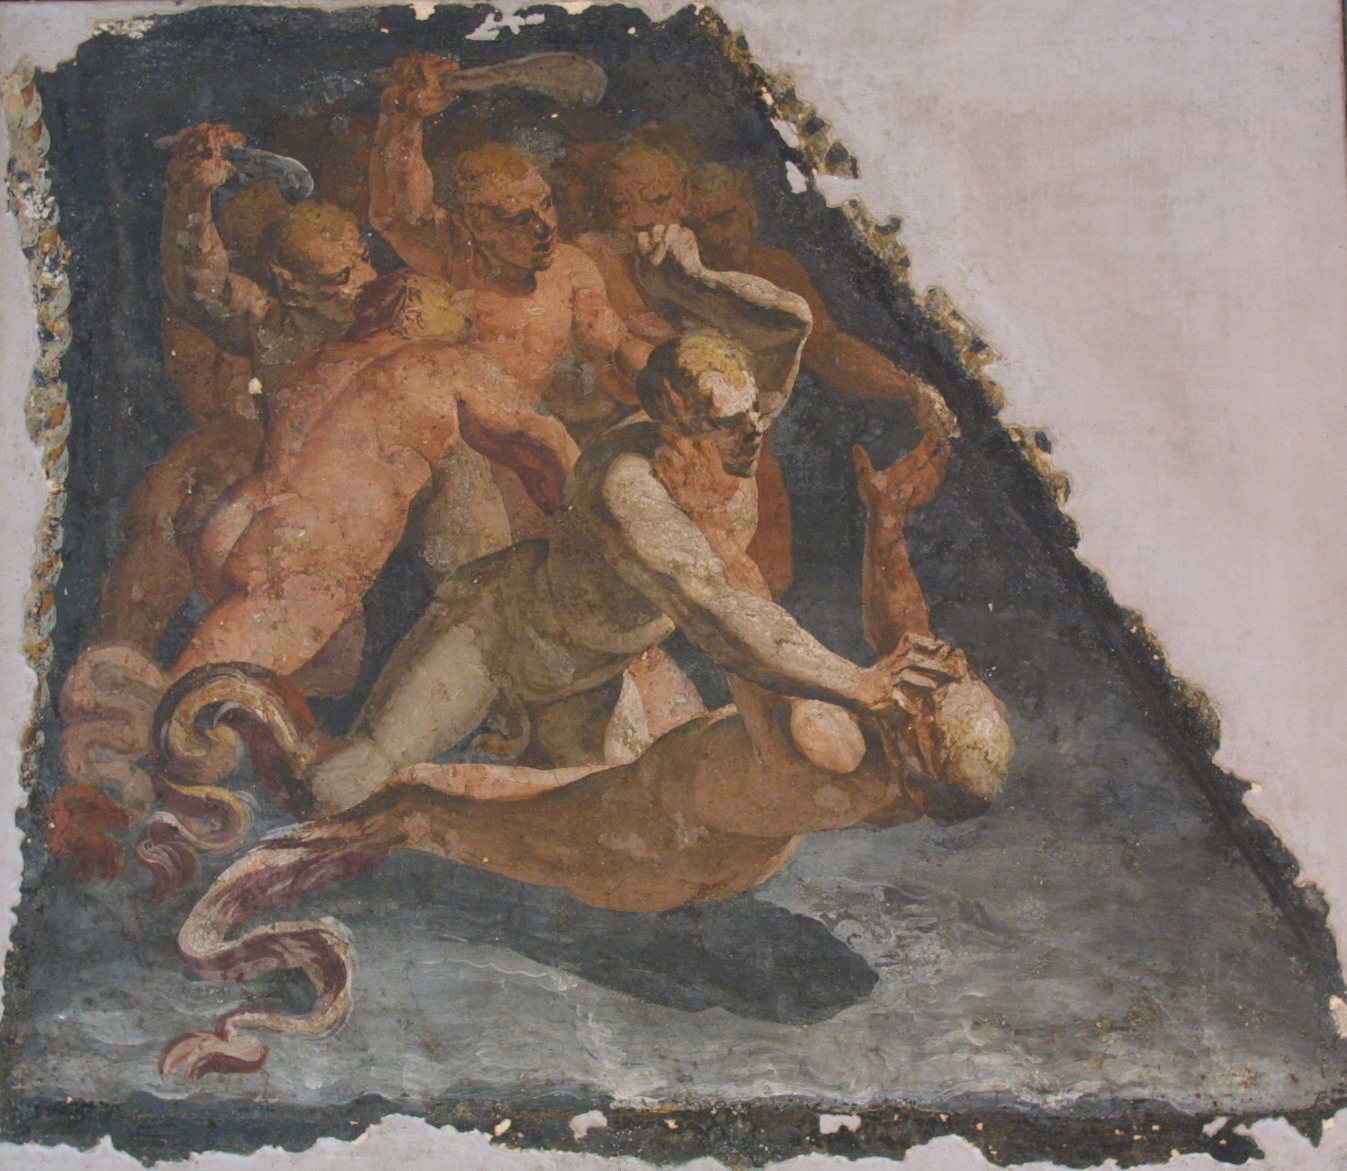 Luca Cambiaso, Fresco, "Fight of Tritons"